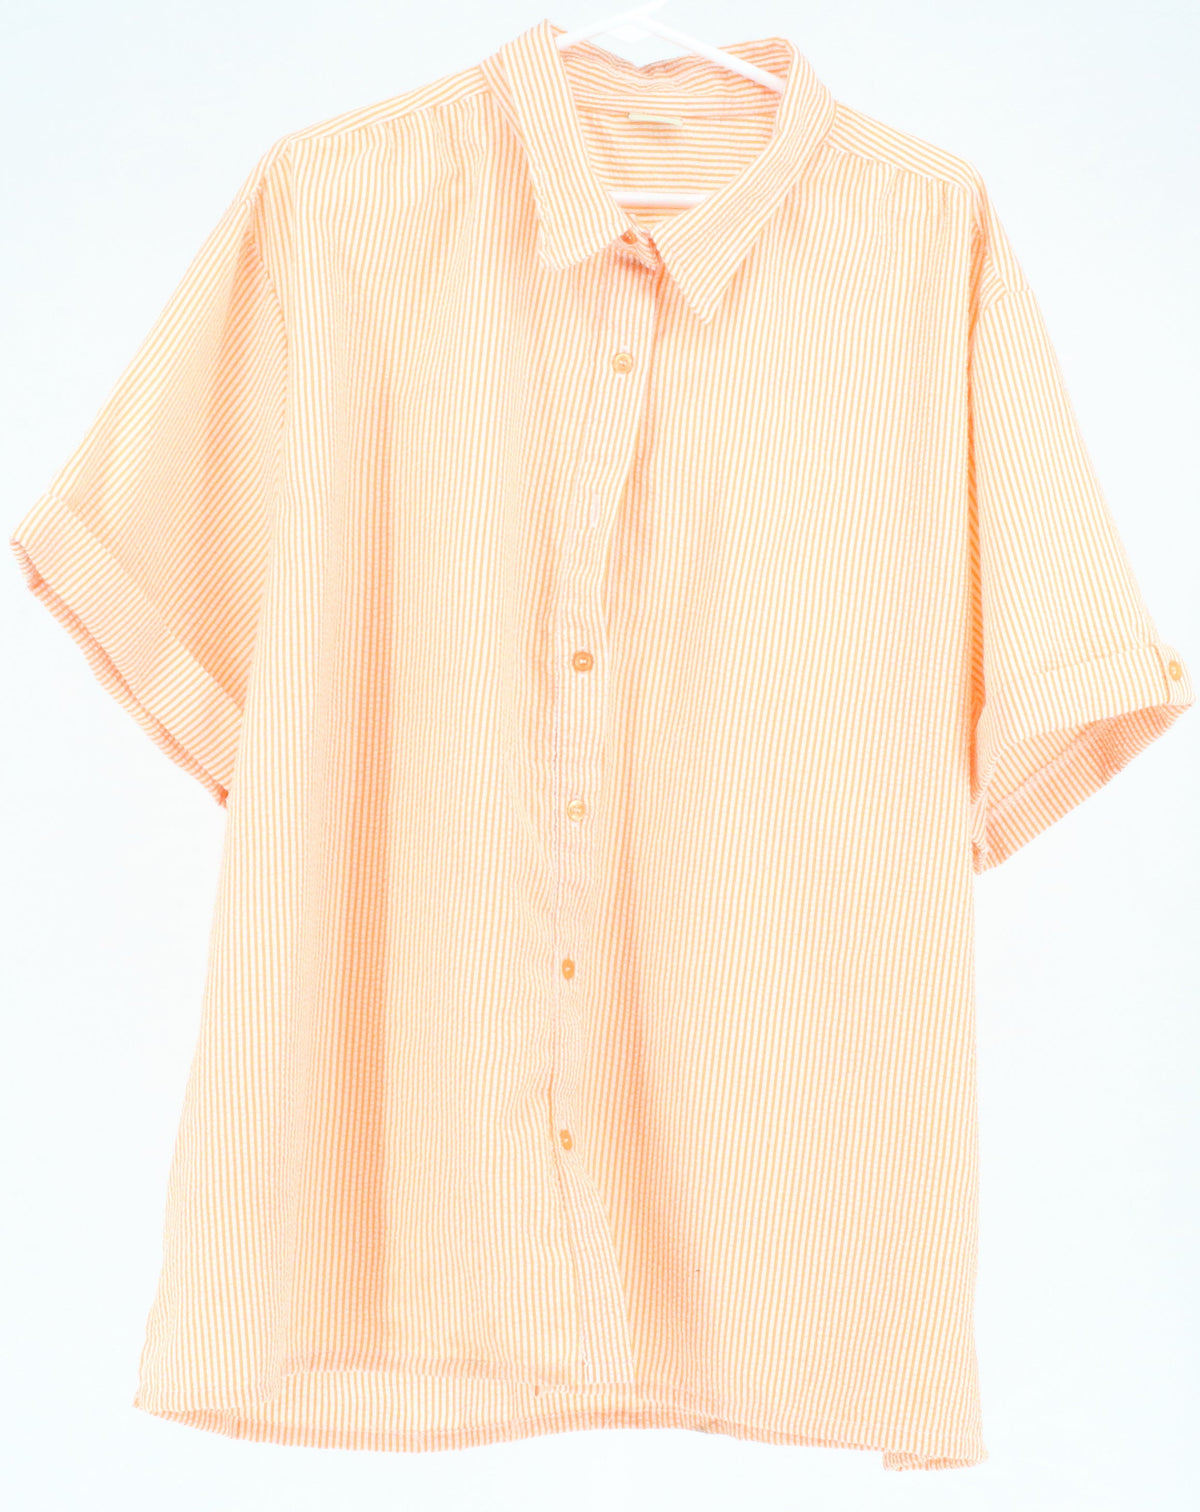 Bocabay Orange & White Striped Short Sleeve Shirt